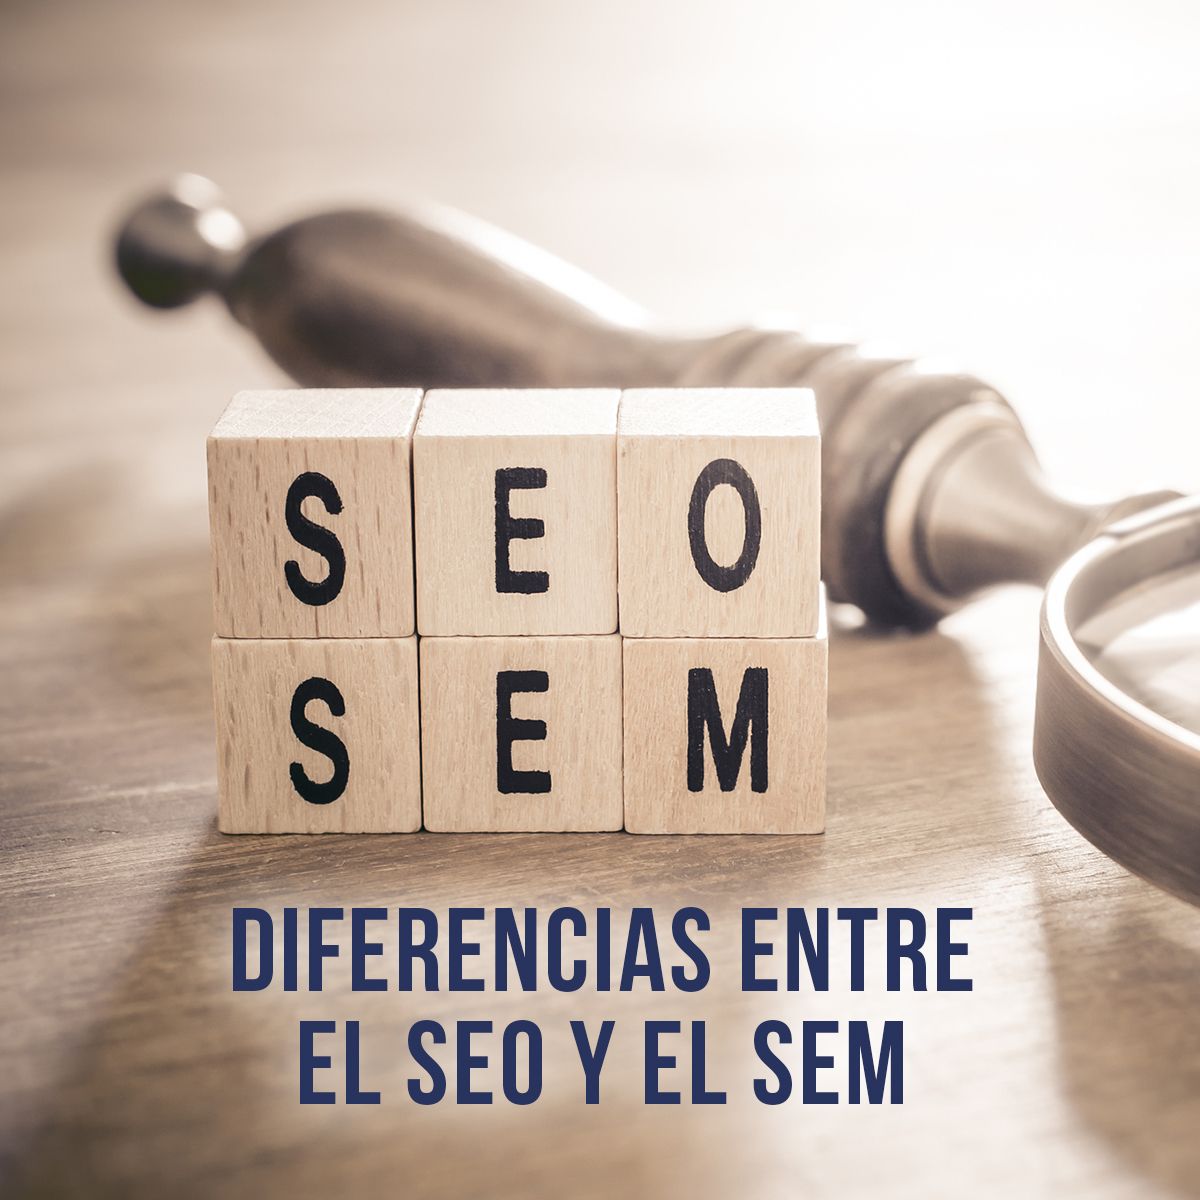 Diferencias entre el SEO y el SEM